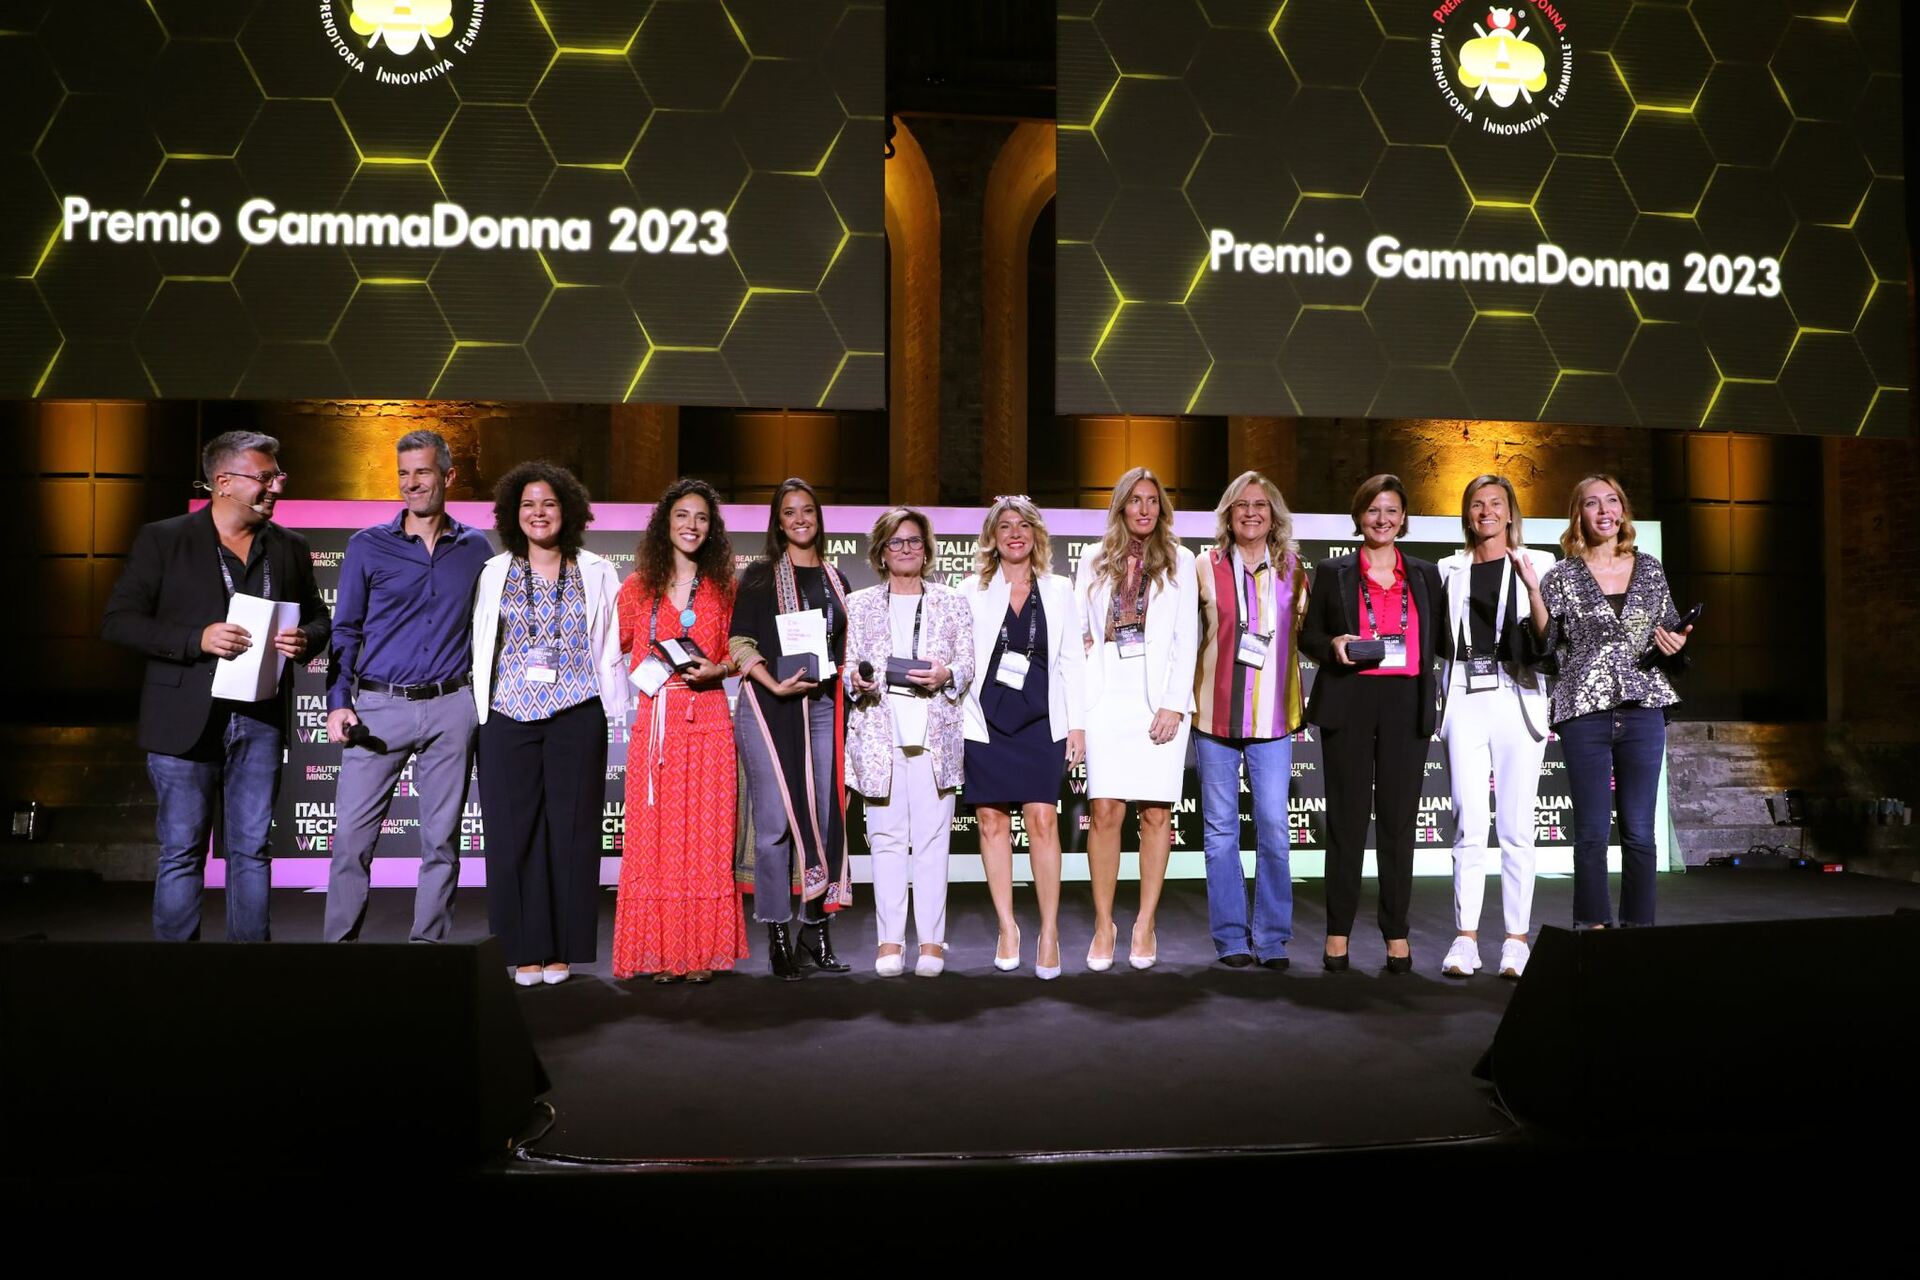 Premio GammaDonna: un'associazione no-profit, con sedi a Torino, Milano e Roma in Italia